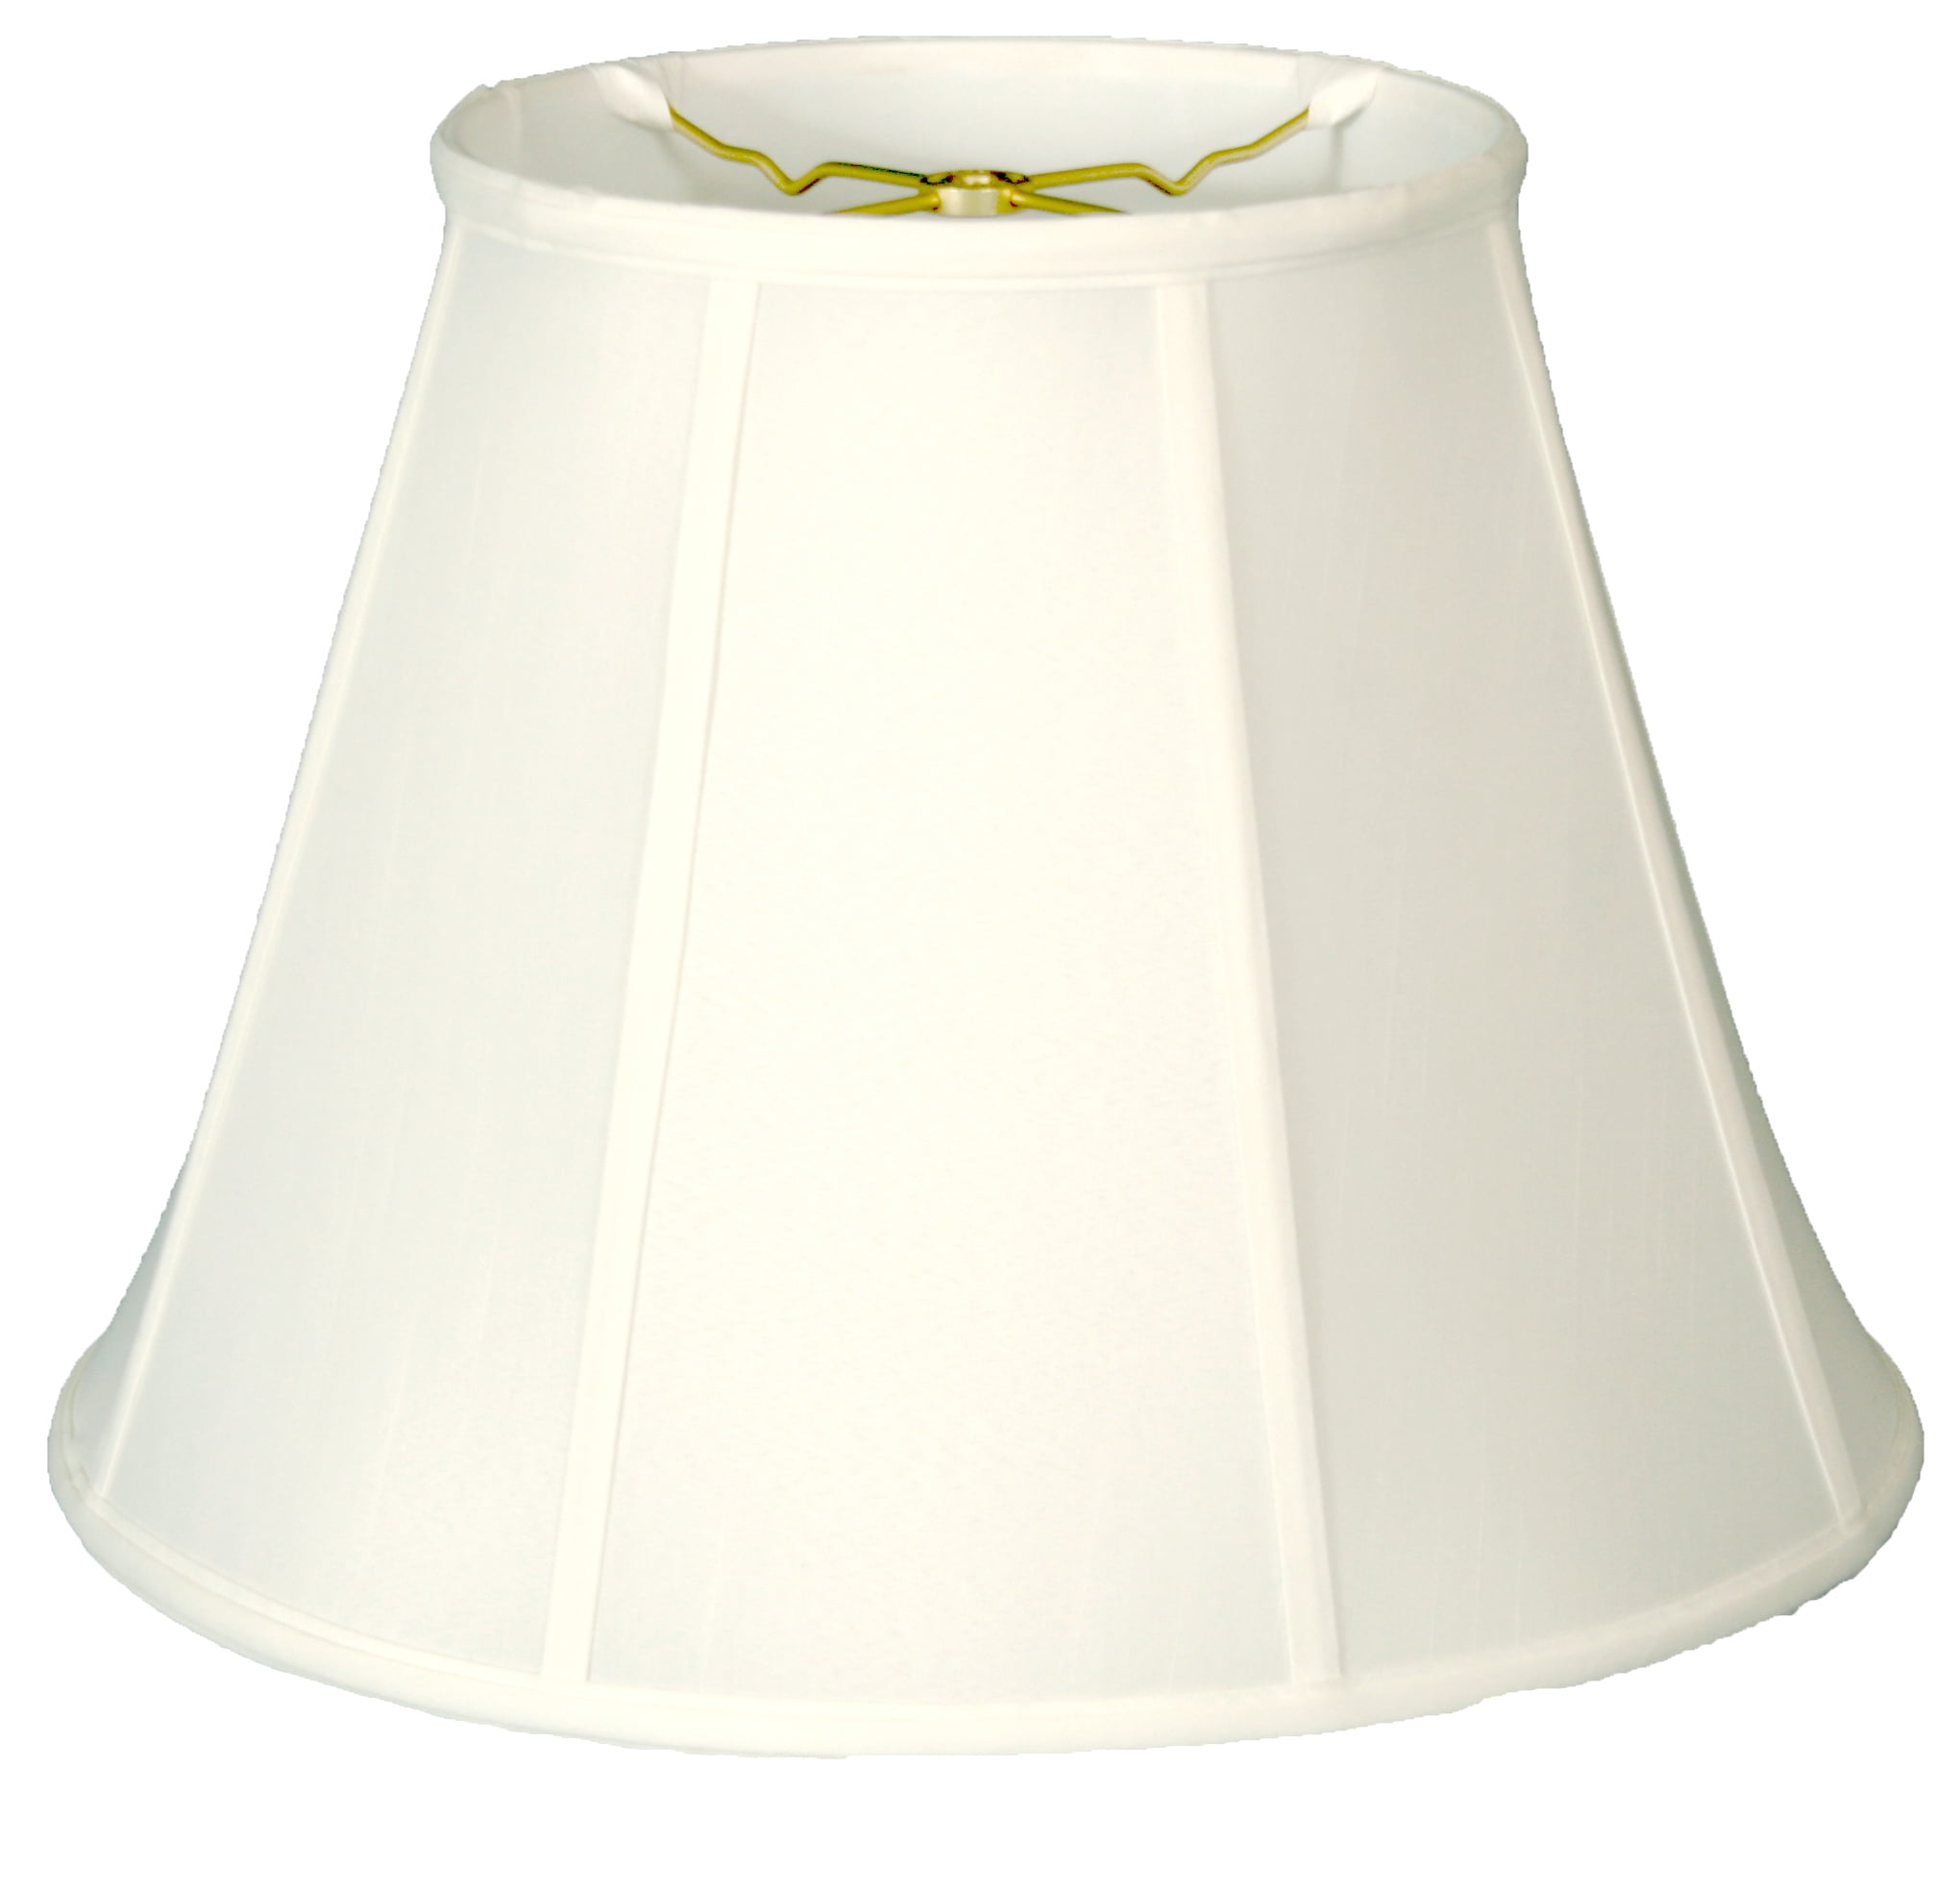 Royal Designs English Pleat Empire Lamp Shade 